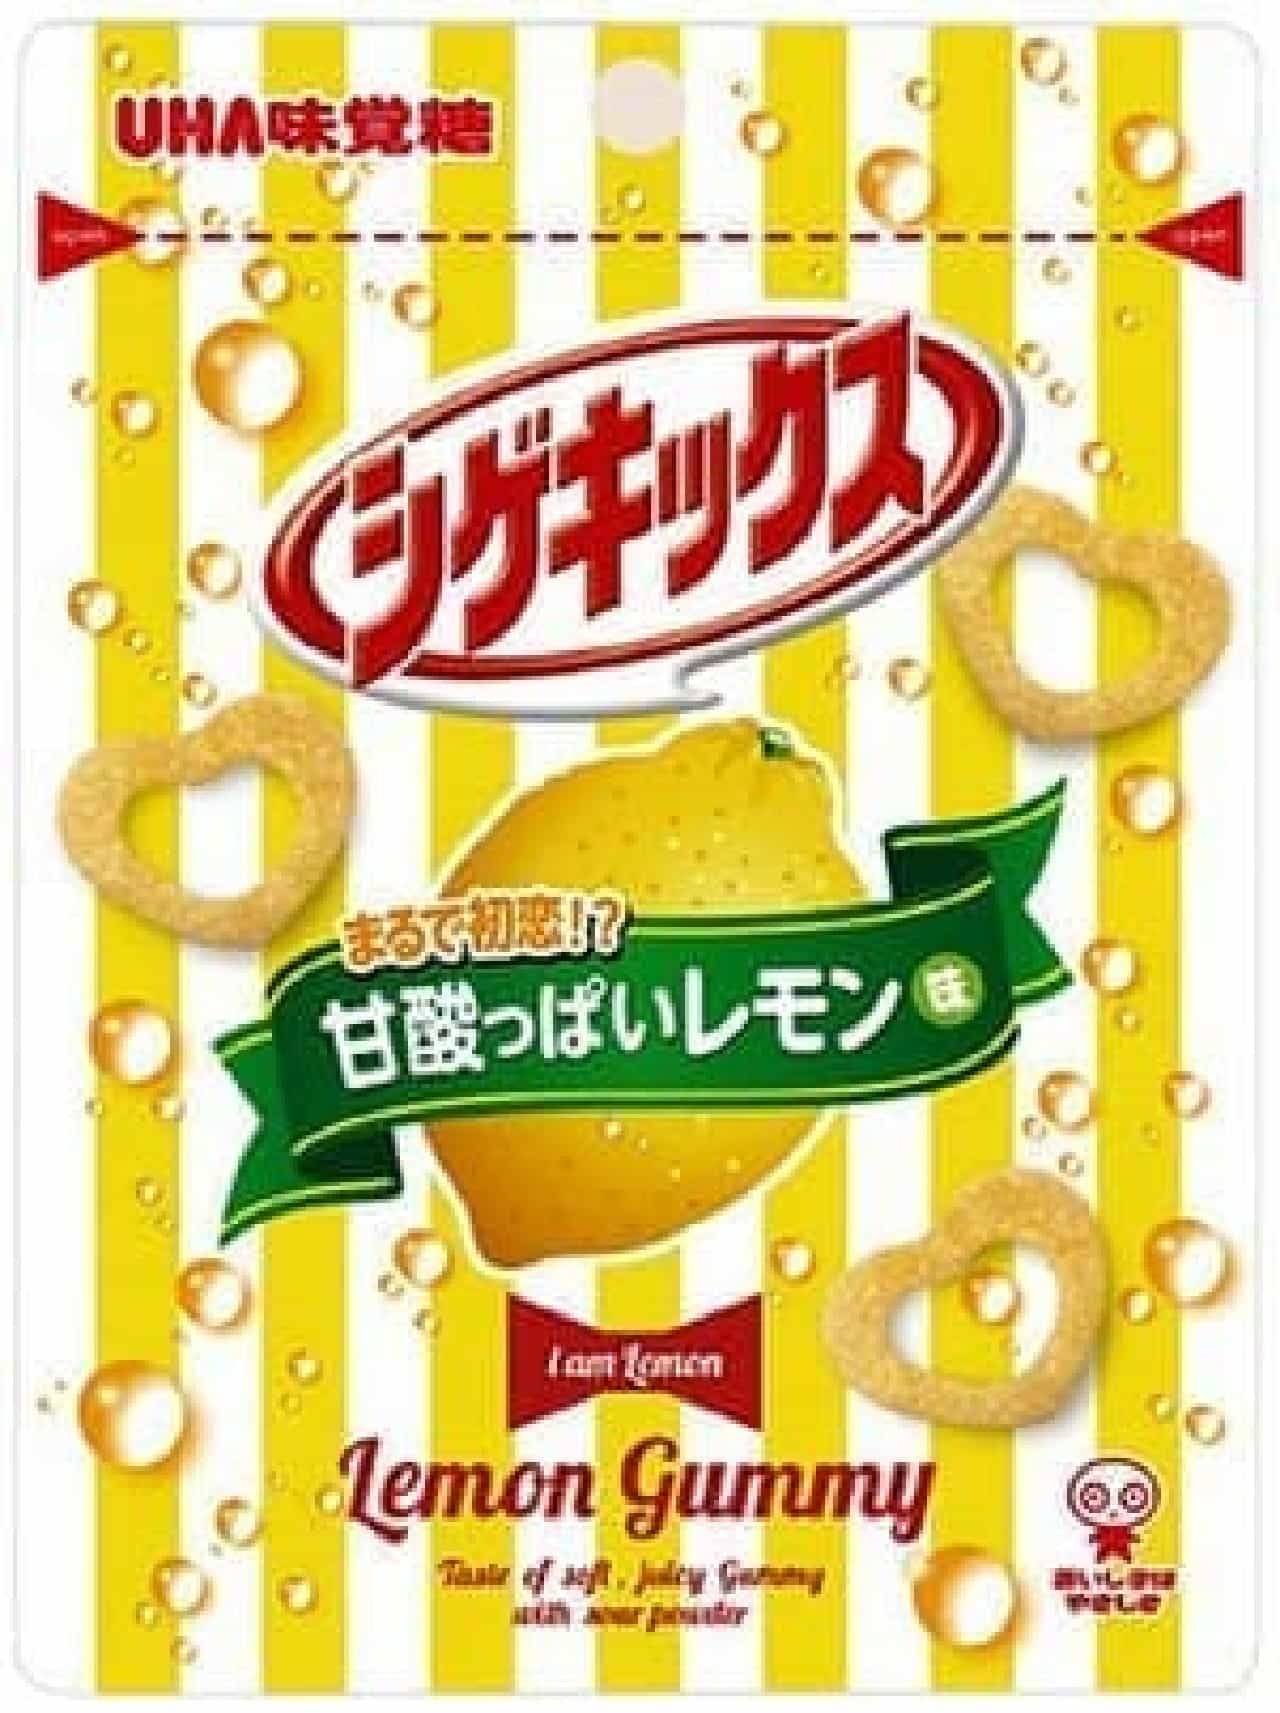 "Lemon" bread and sweets for FamilyMart